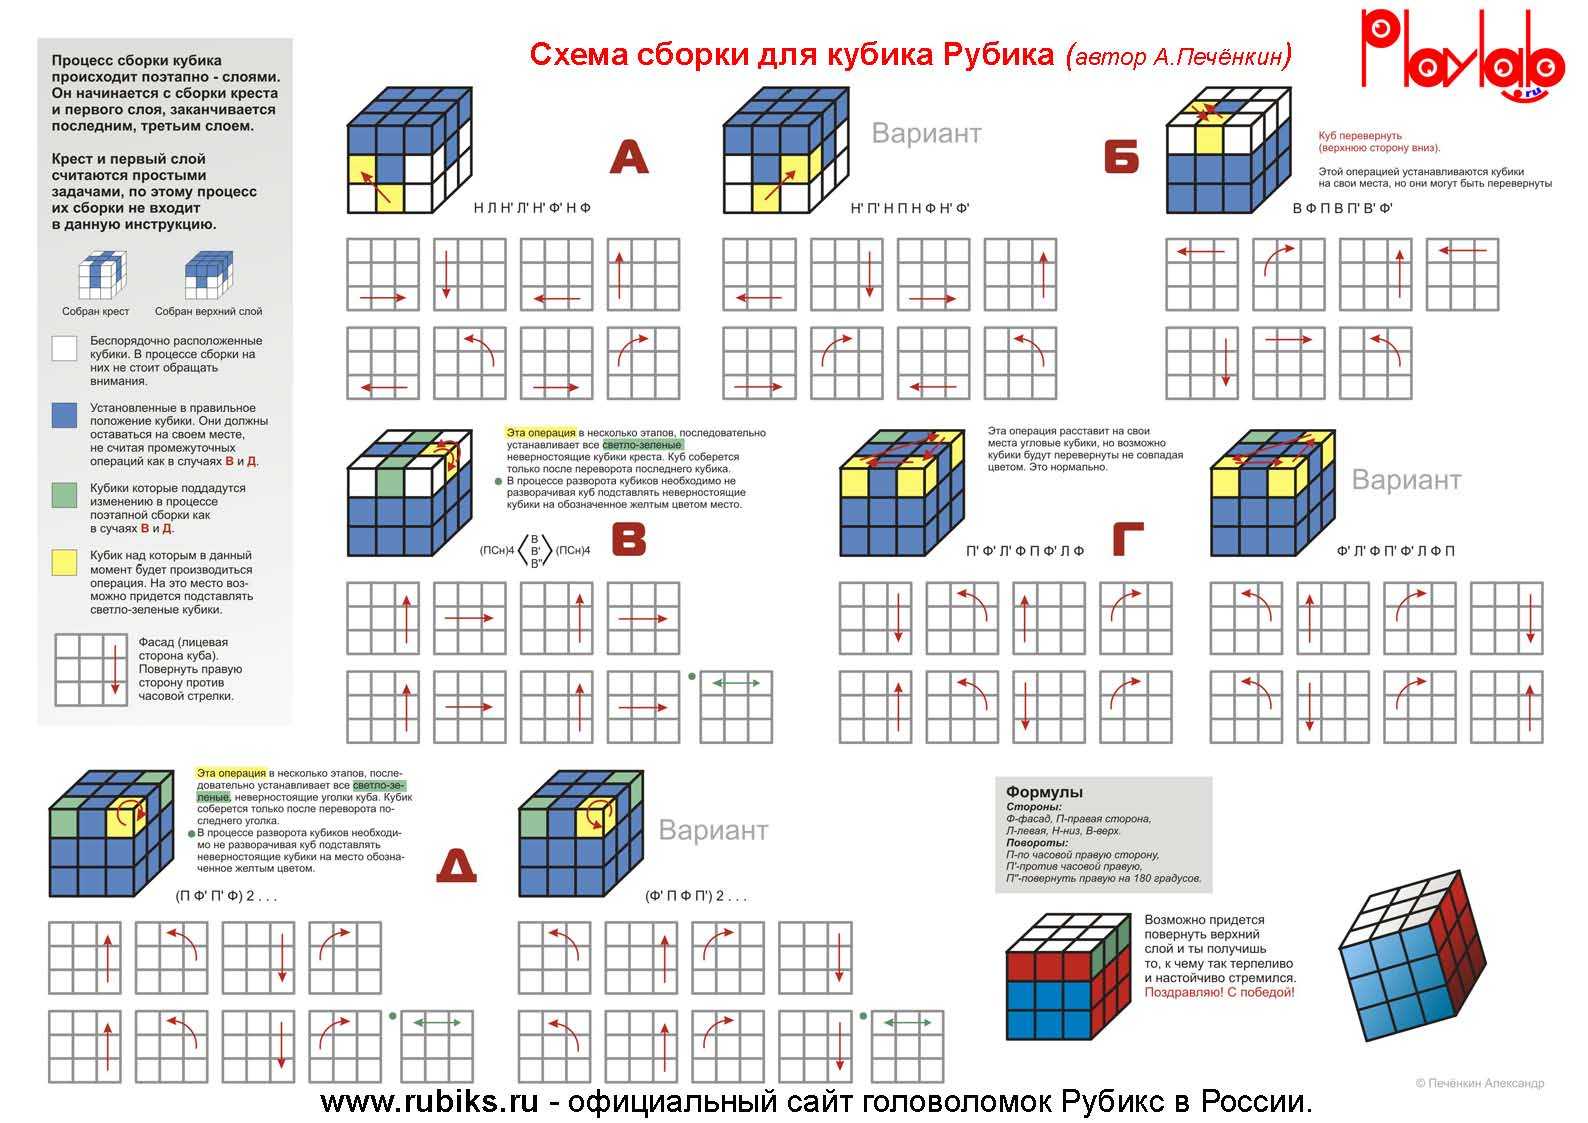 Как собрать кубик рубика 3х3 схема с картинками для начинающих - самый легкий способ - видео